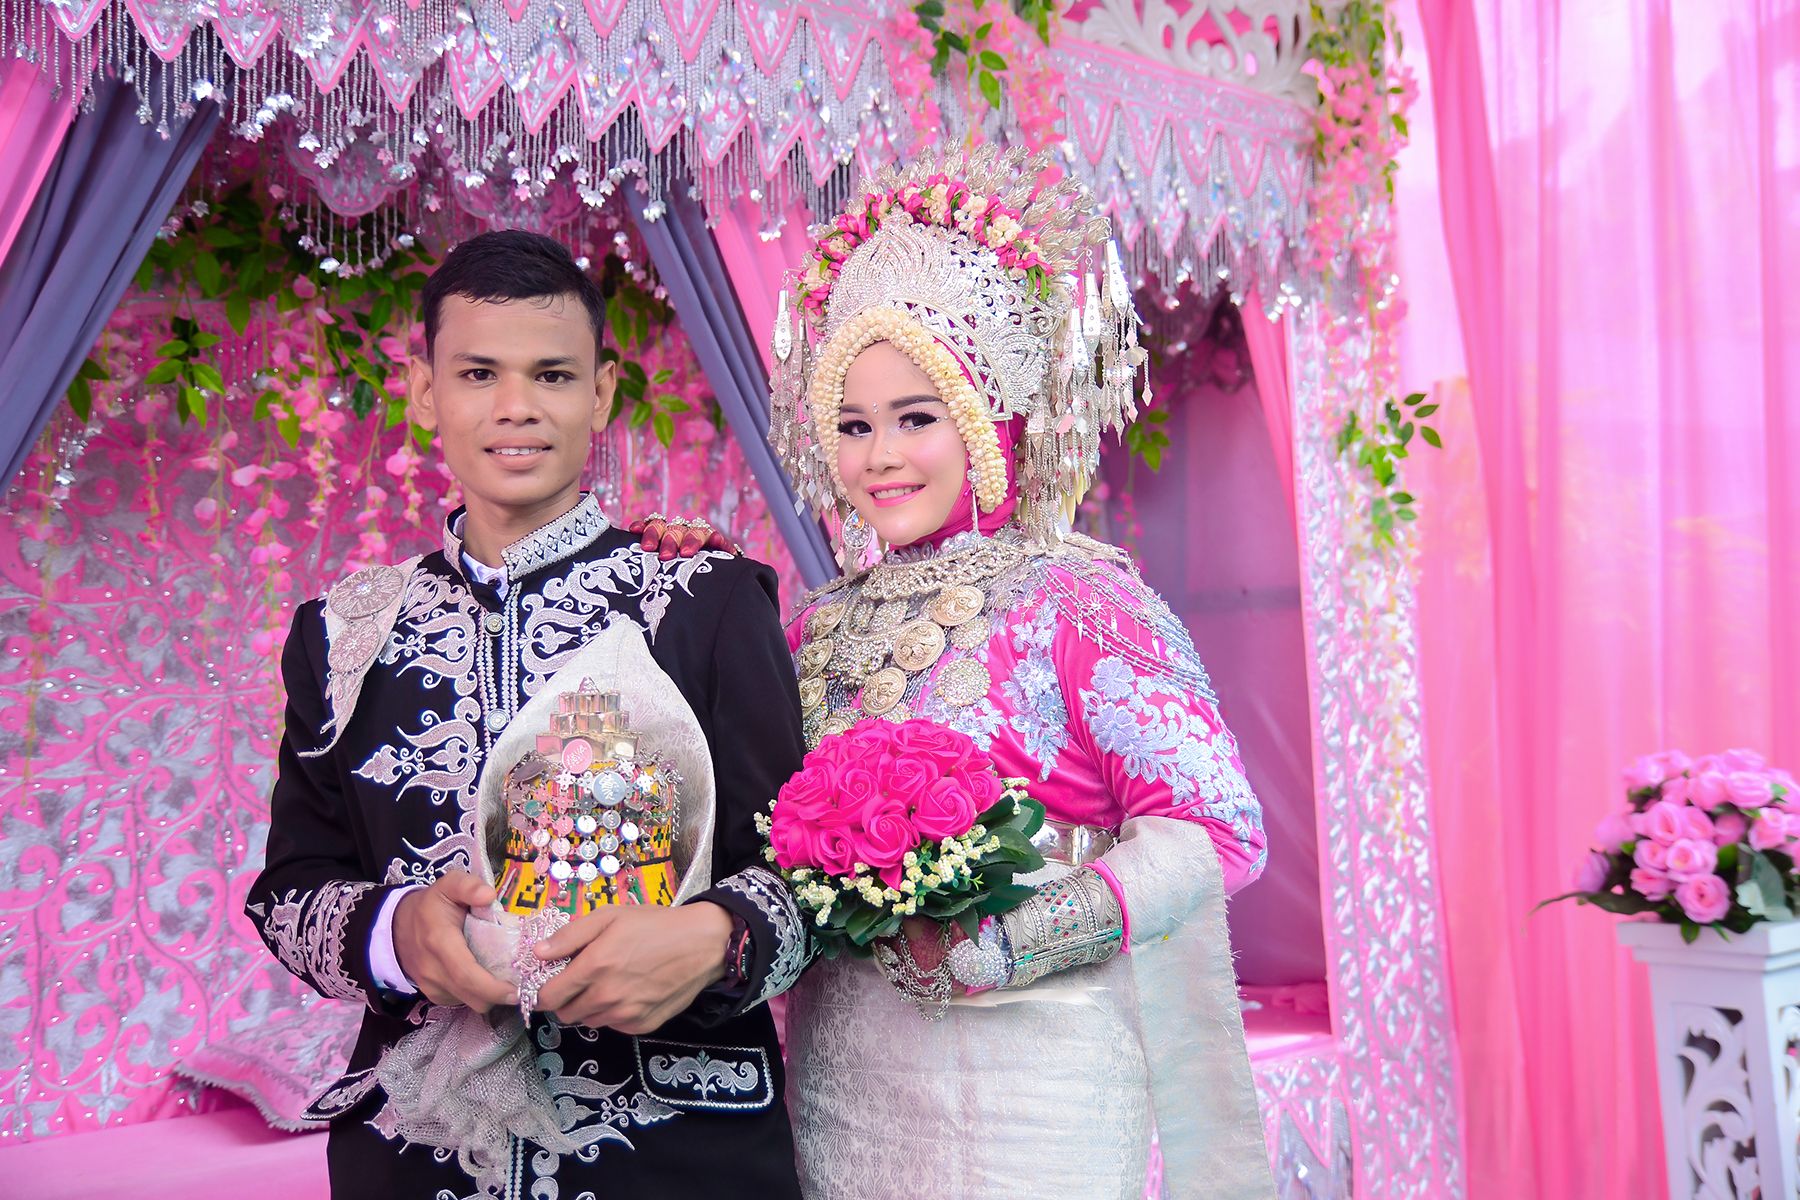  Pakaian  Adat  Aceh  Pada Acara Resepsi Pernikahan  Steemit